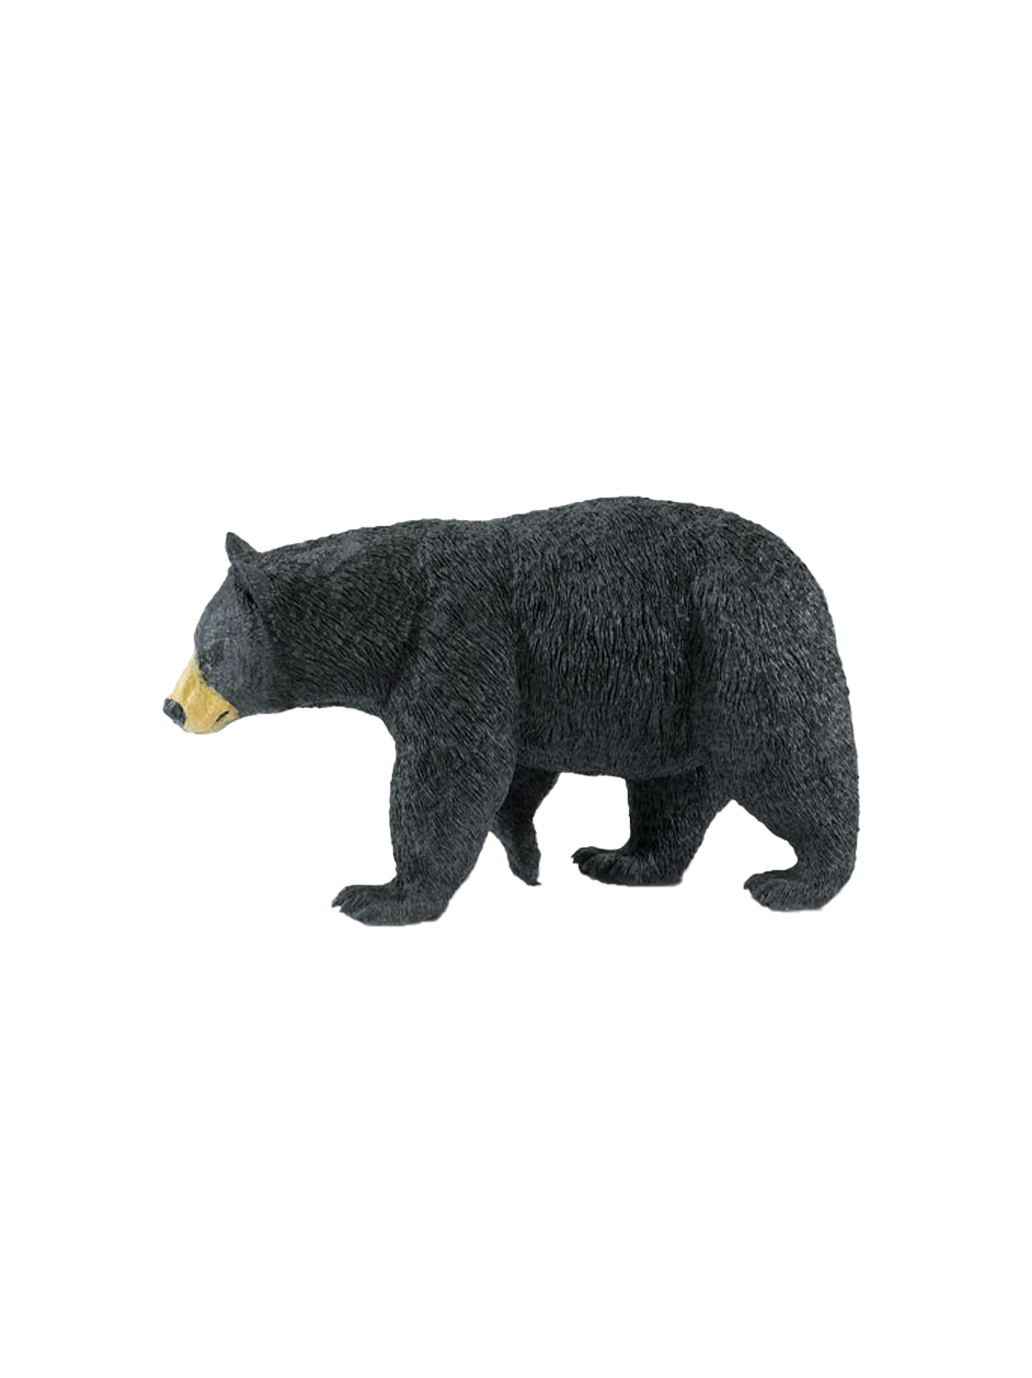 Una grande statuetta di un orso nero